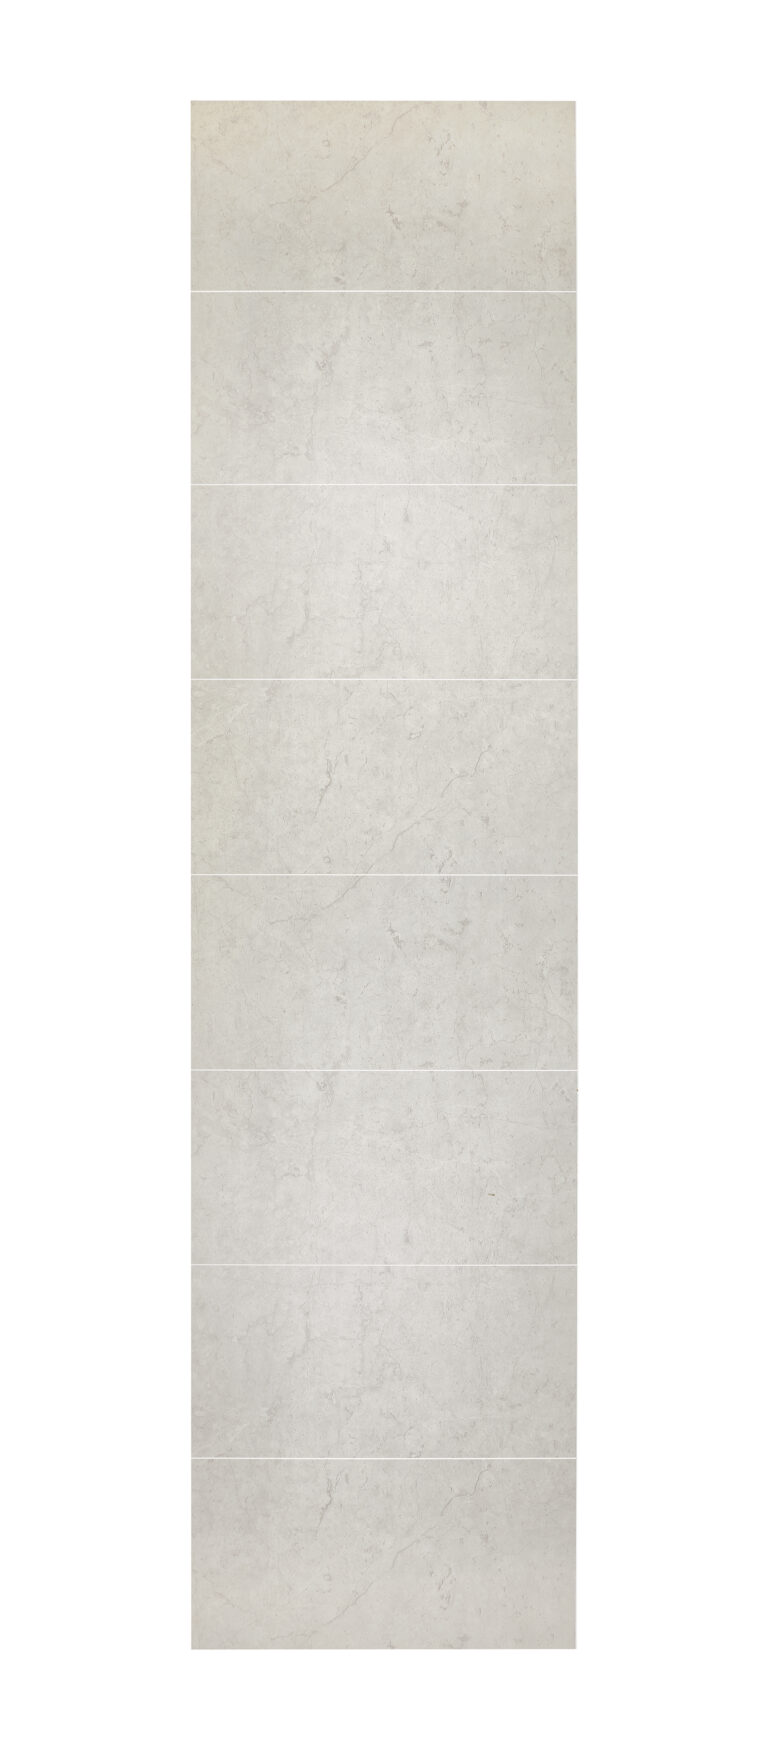 swt10 santorini marble full panel